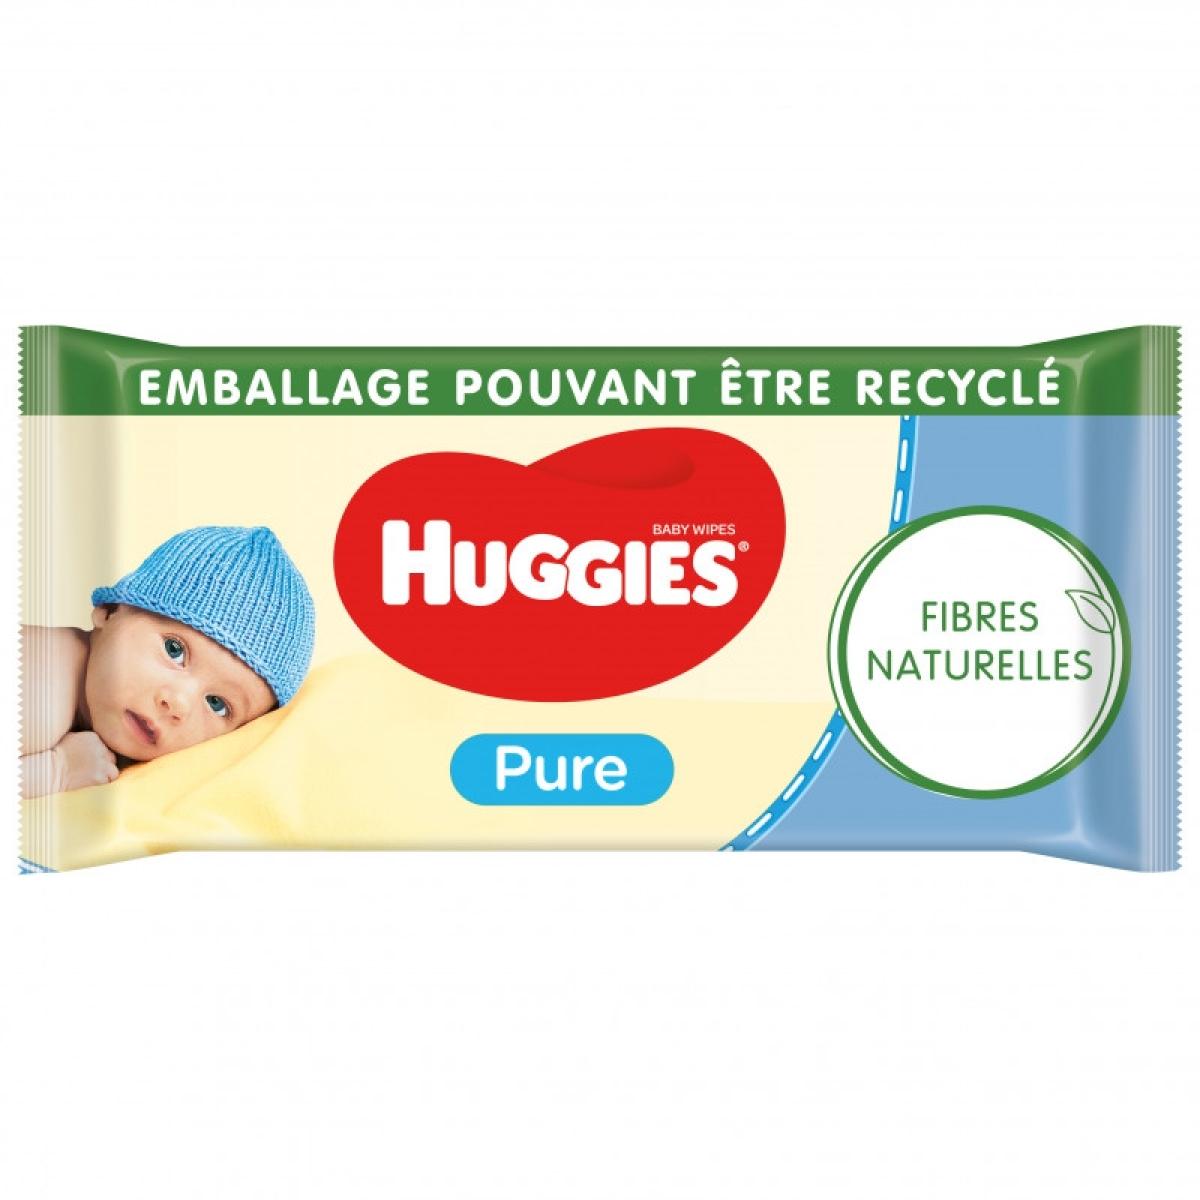 Huggies Lot de 3 paquets lingettes bébé Pure - x56 unités à prix pas cher